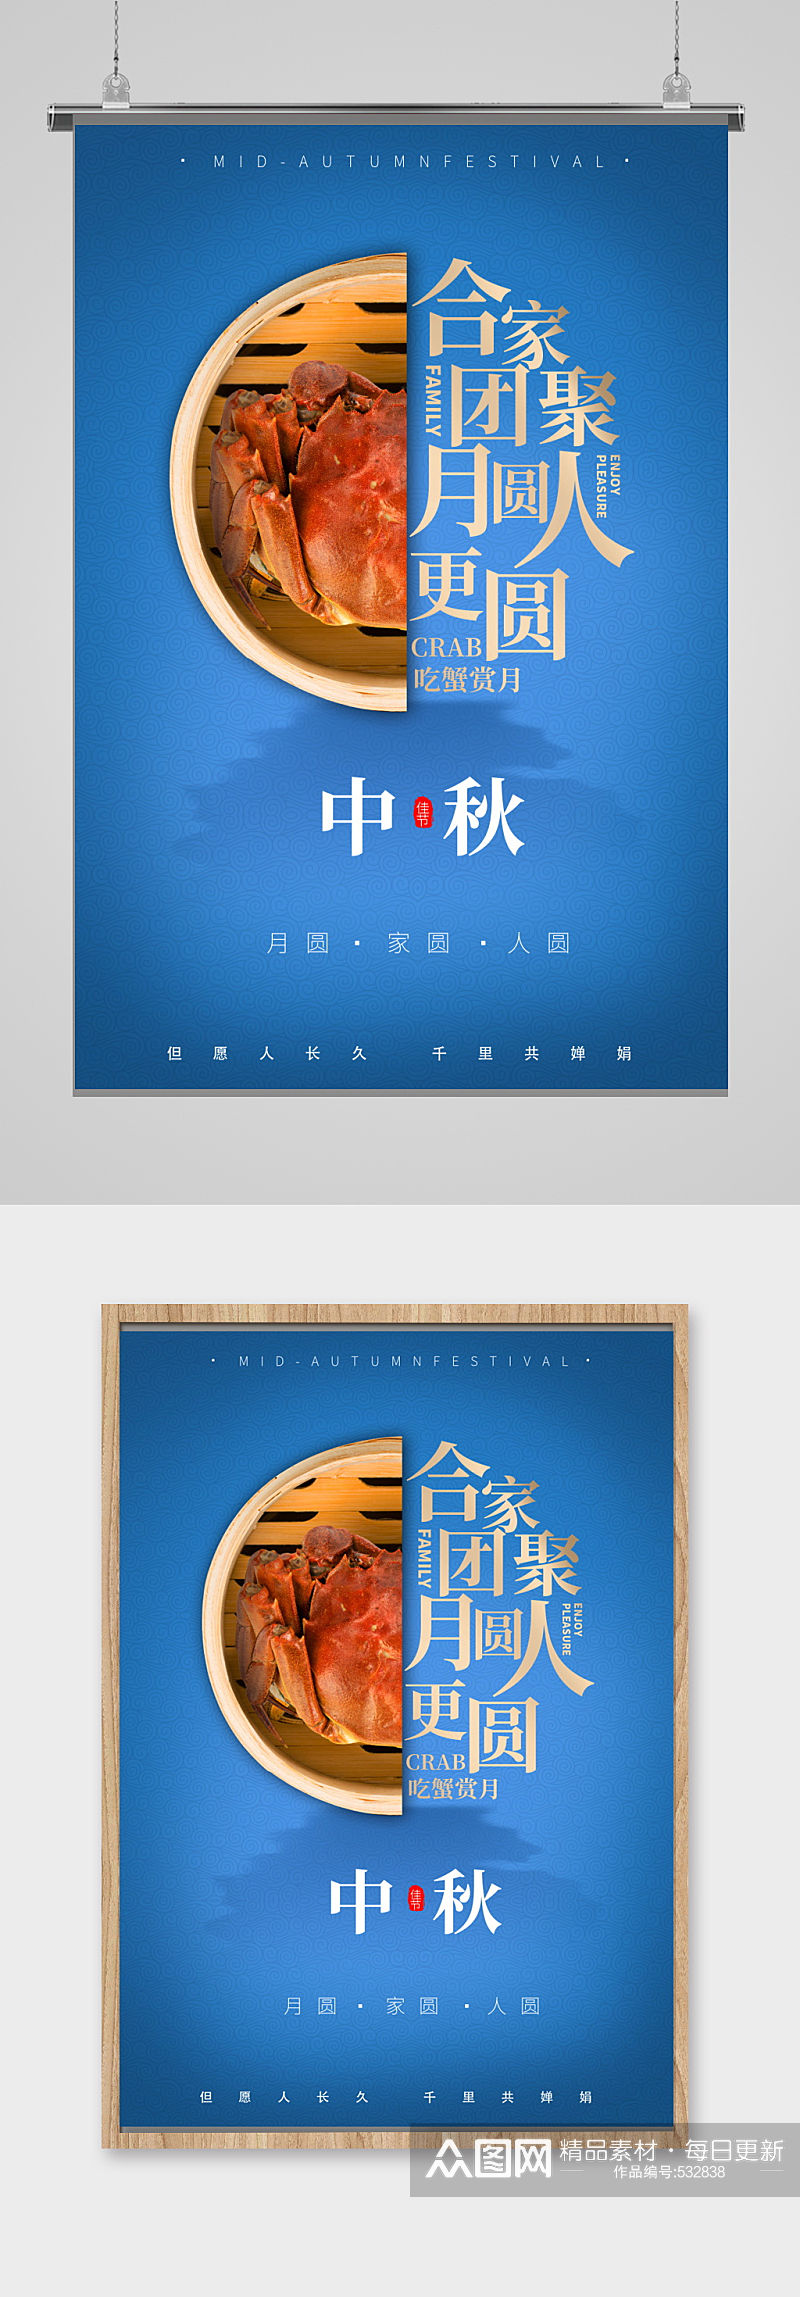 中秋节八月十五活动宣传页海报单页素材